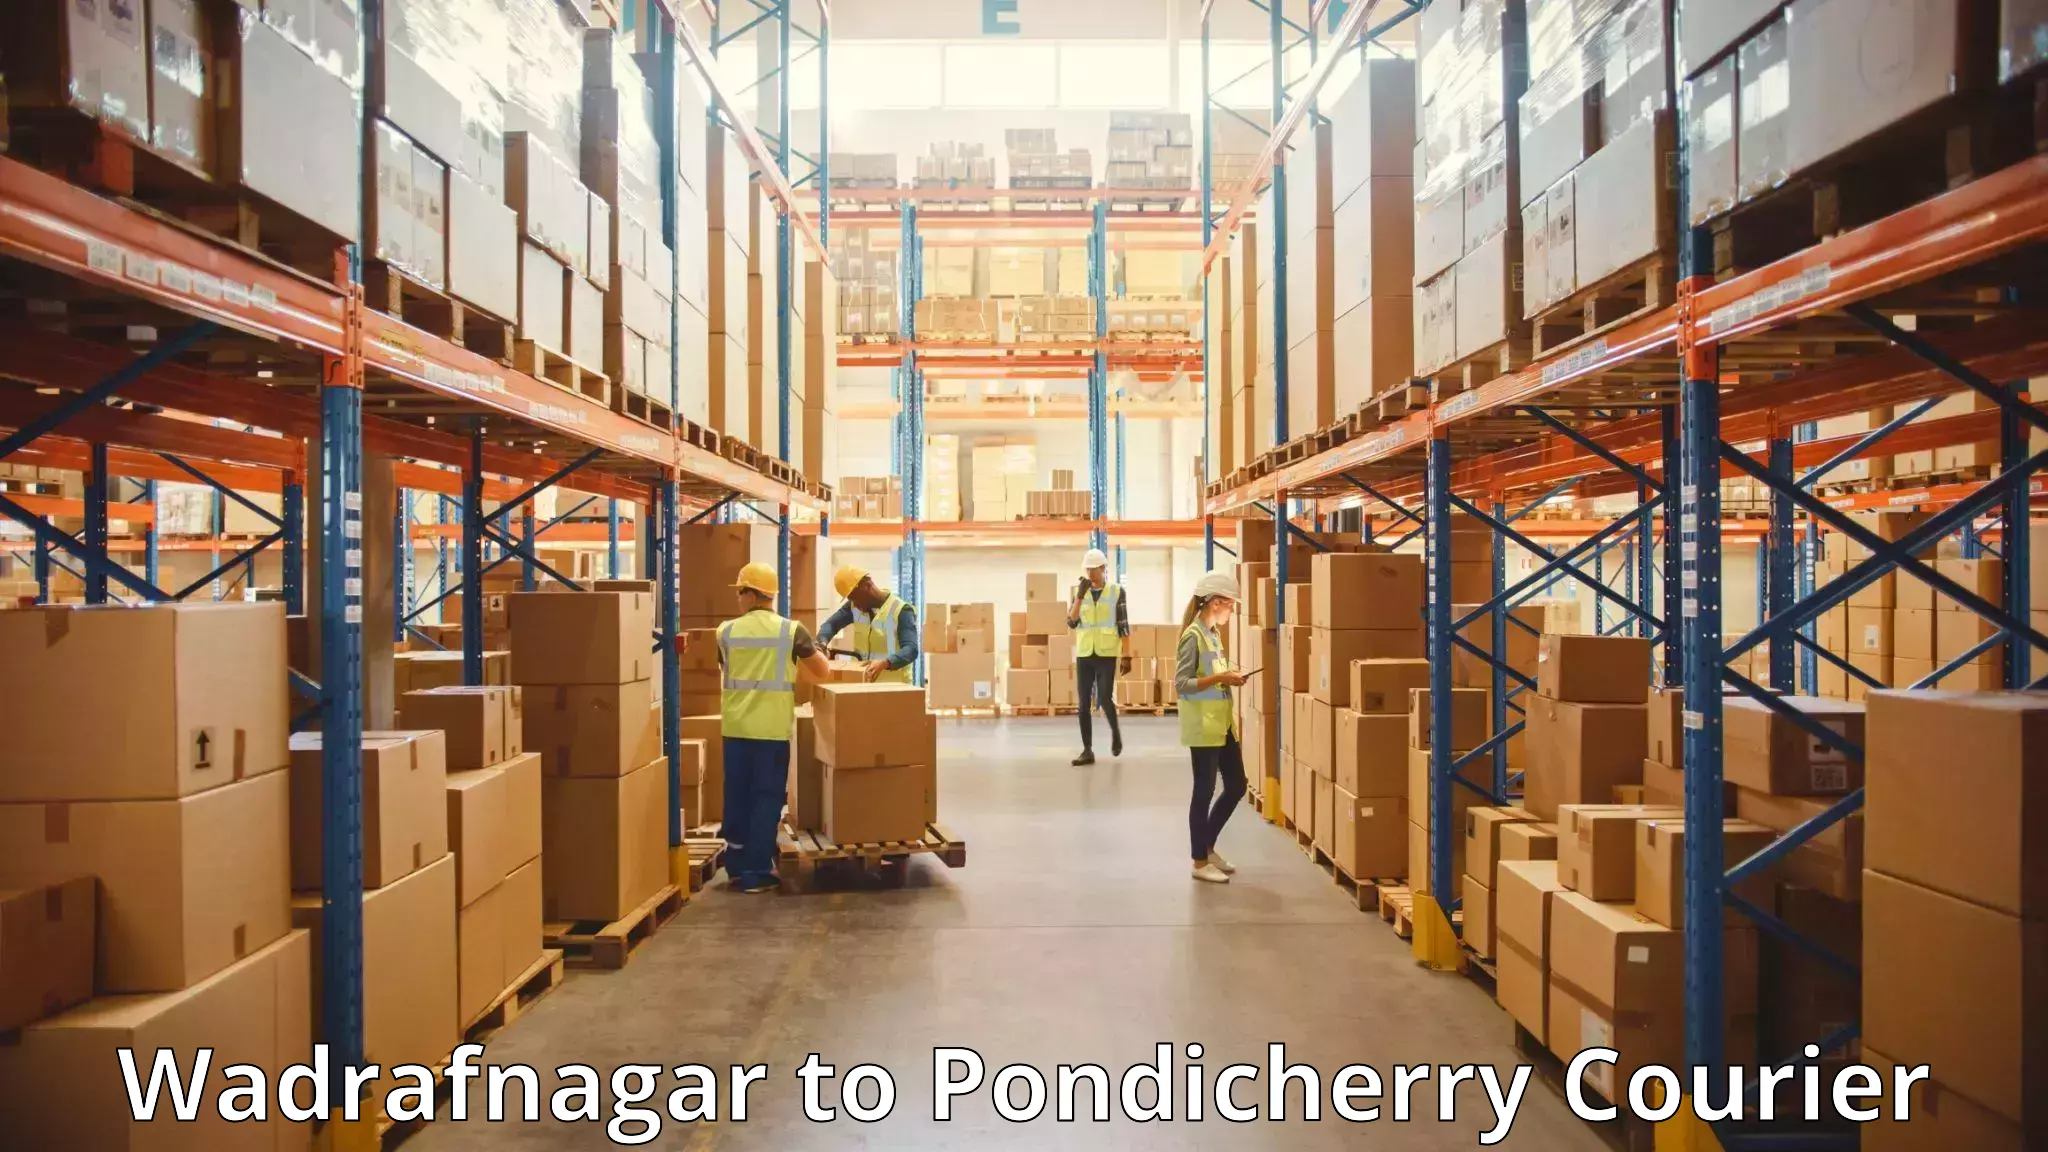 Luggage shipping guide Wadrafnagar to Pondicherry